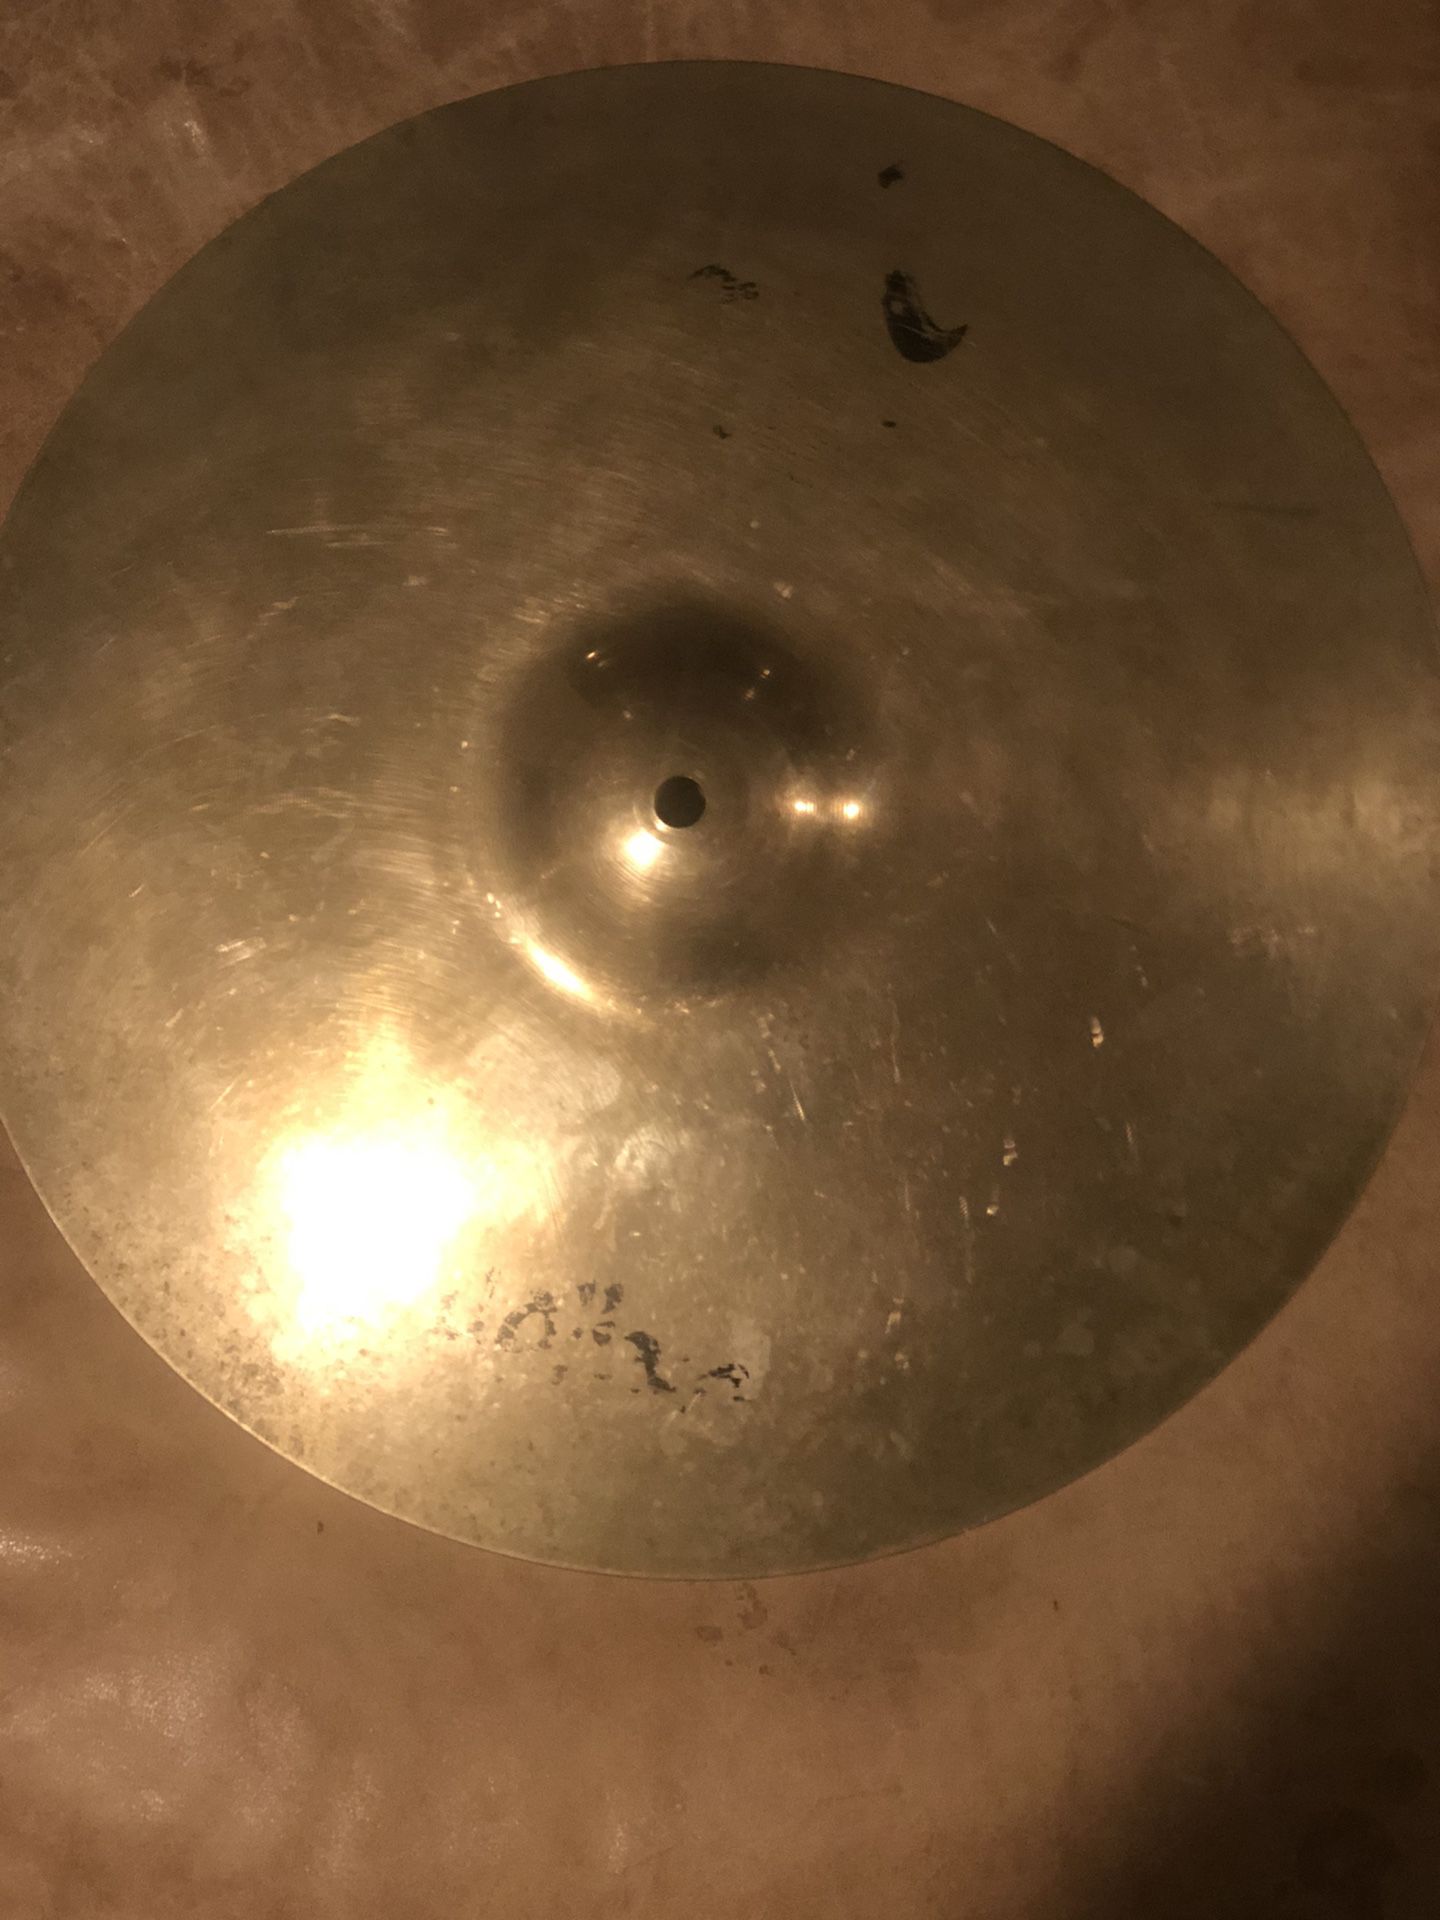 Zildjian A Custom 16 inch Crash Cymbal